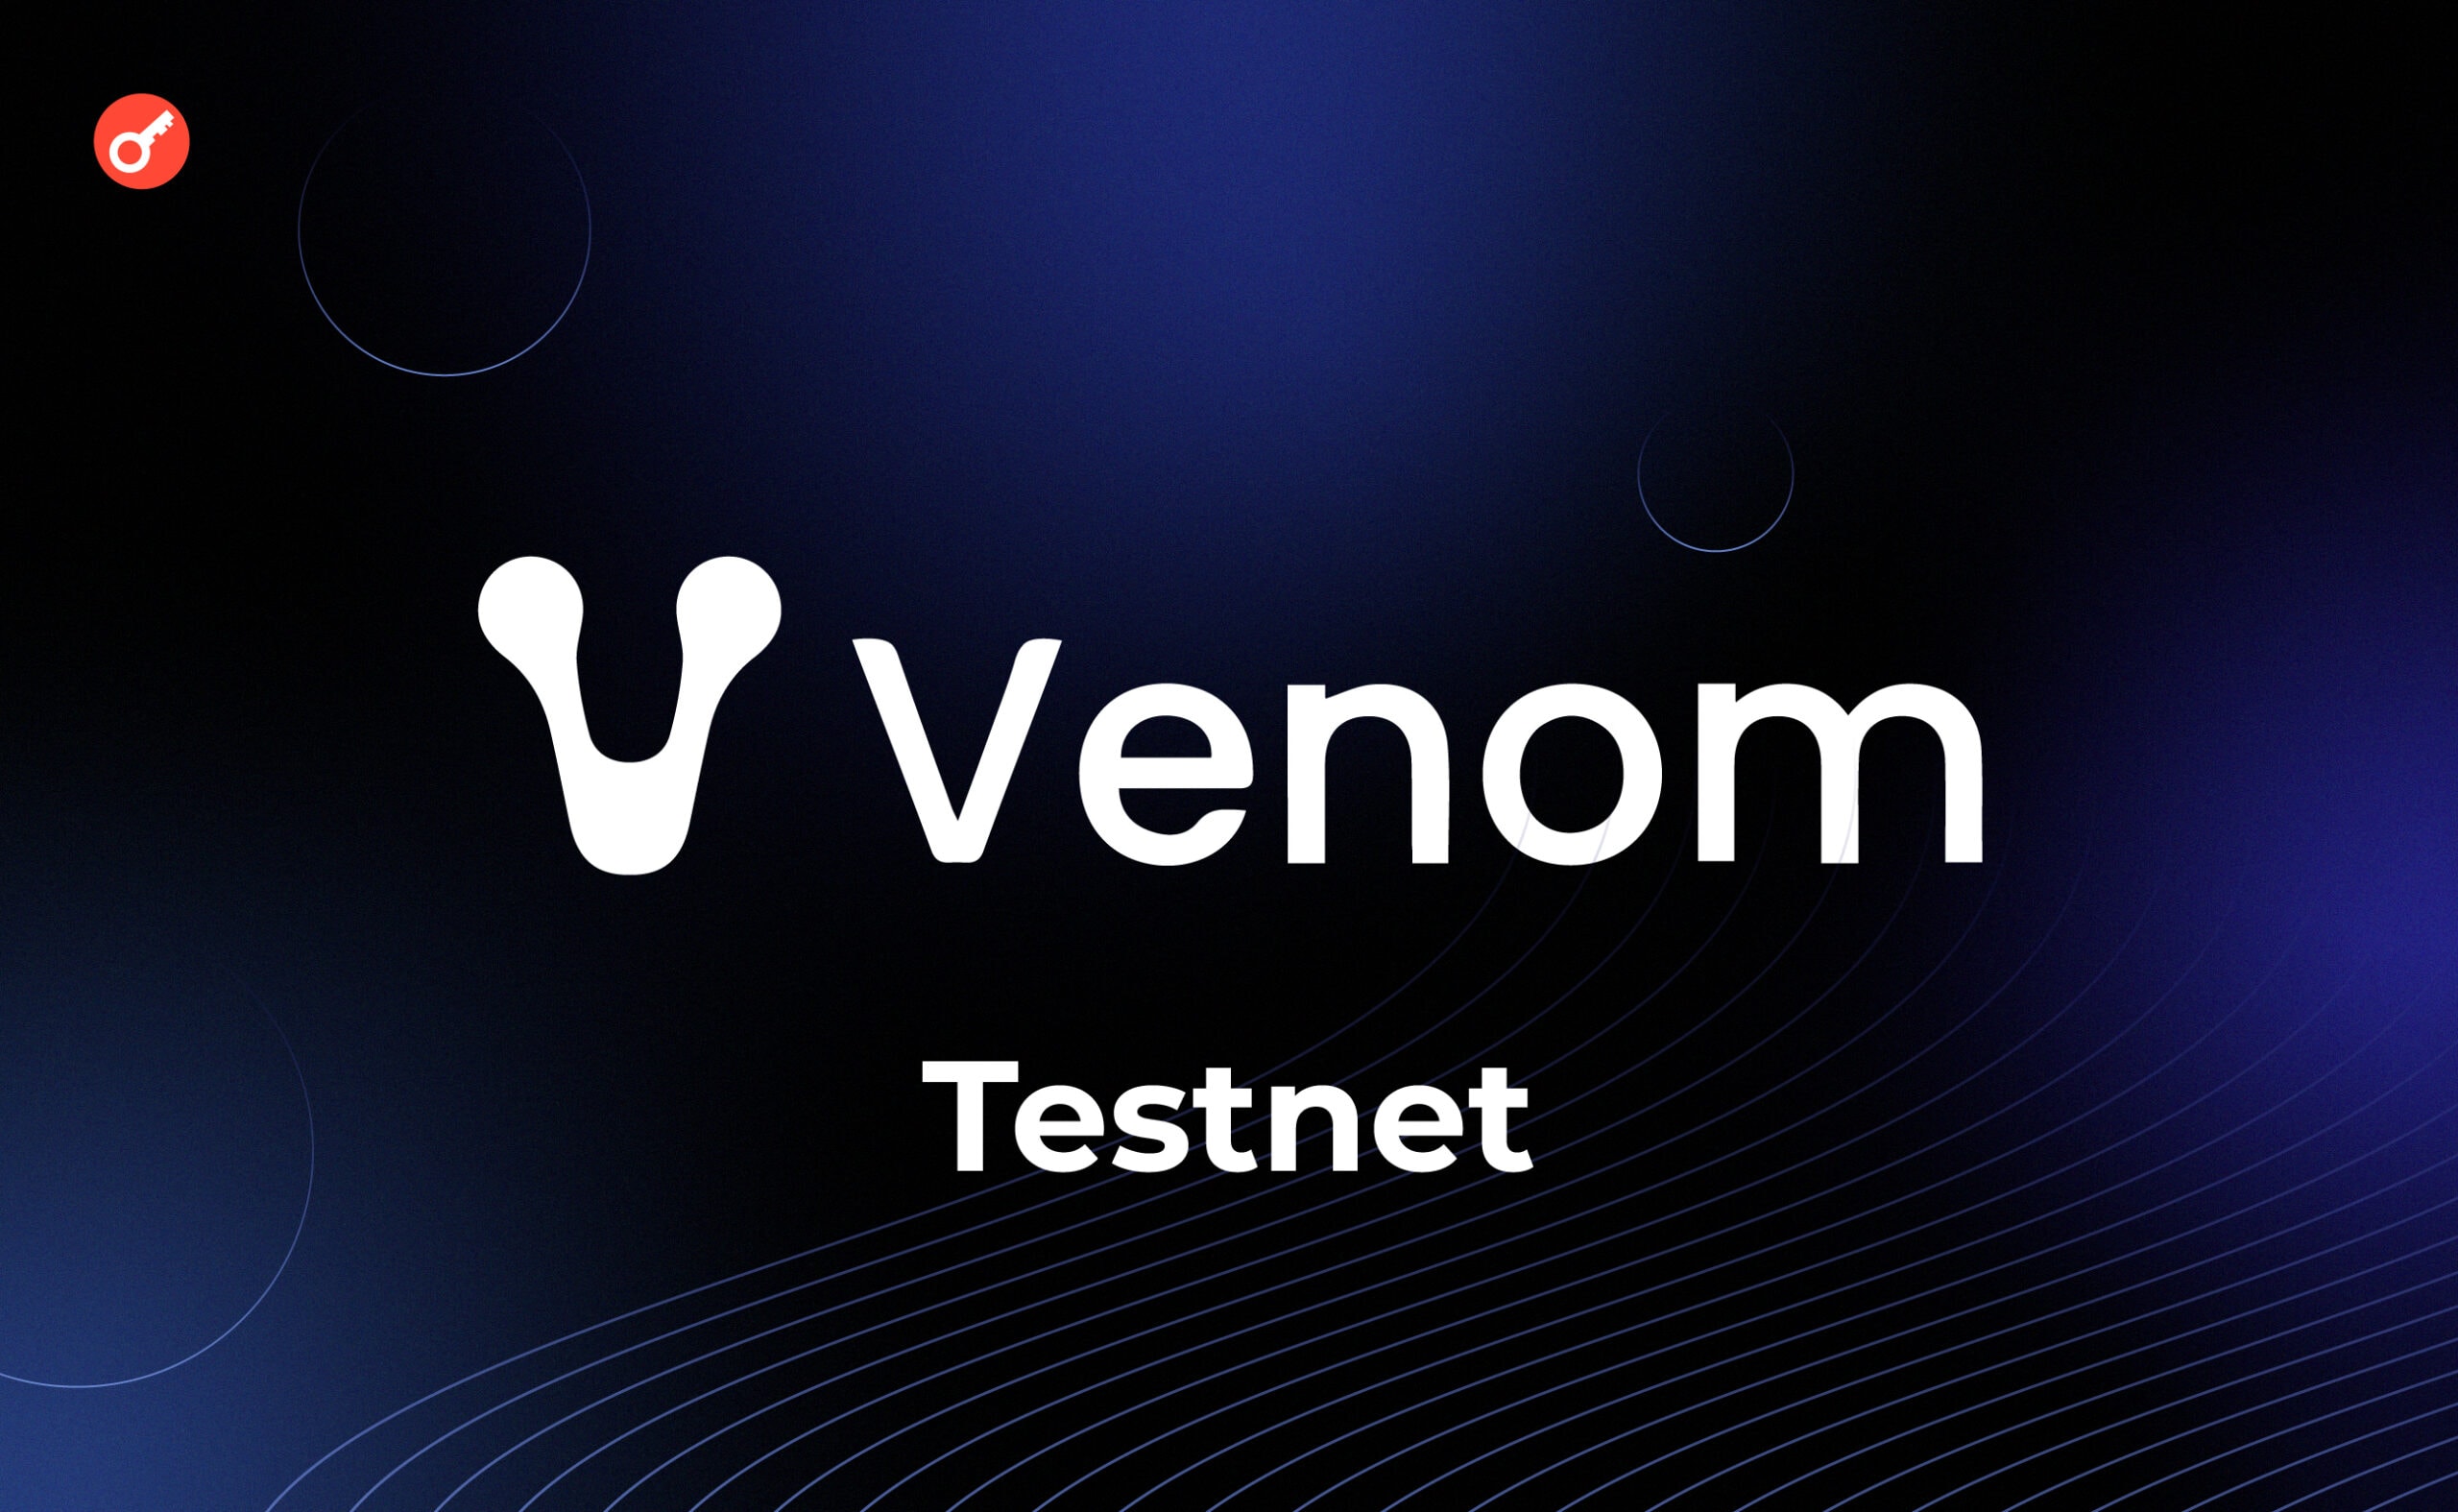 Venom тестнет: огляд на доступні активності в мережі. Головний колаж статті.